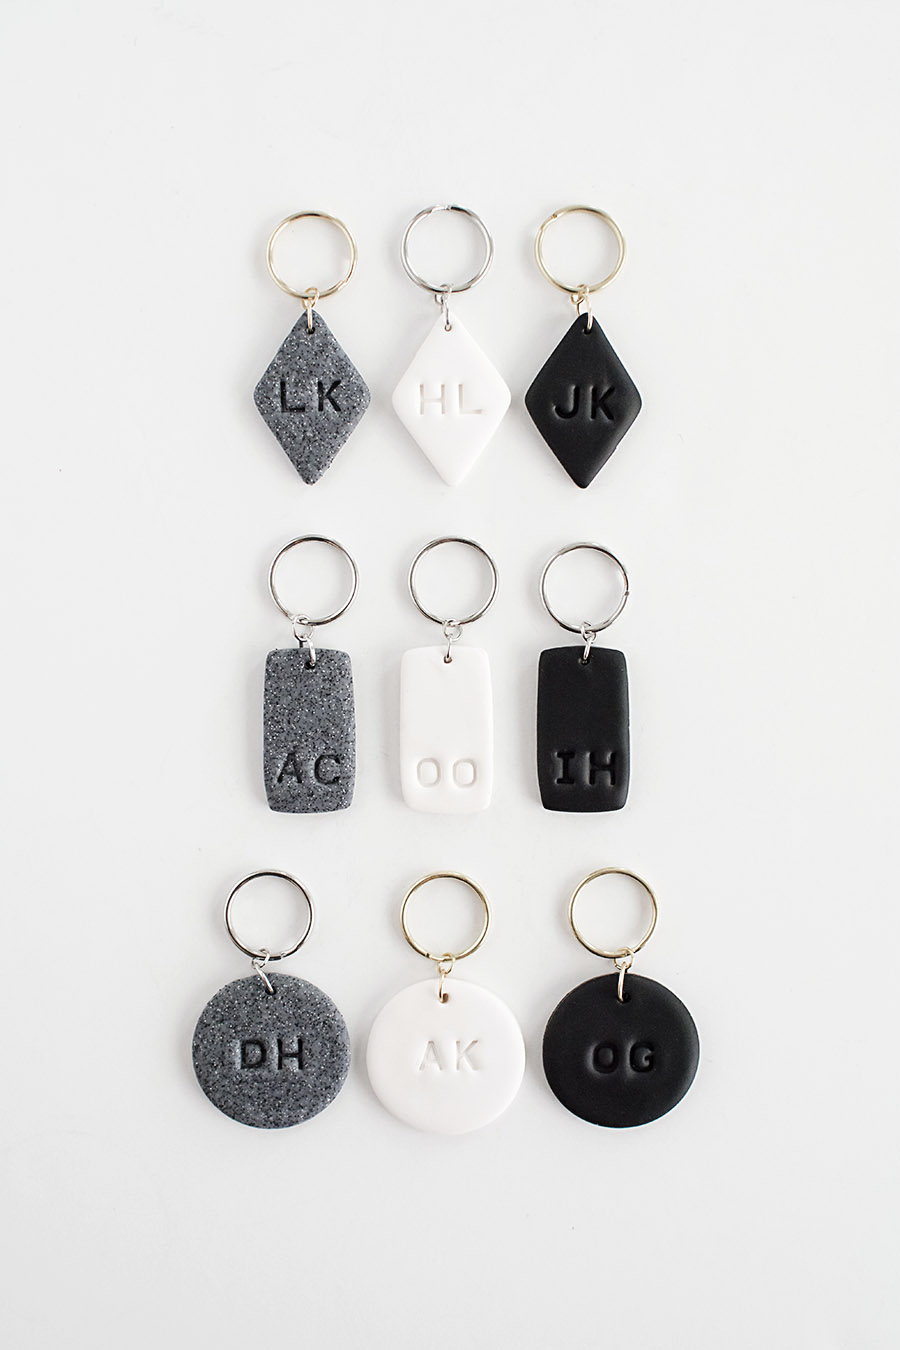 DIY - Monogram Clay Keychains